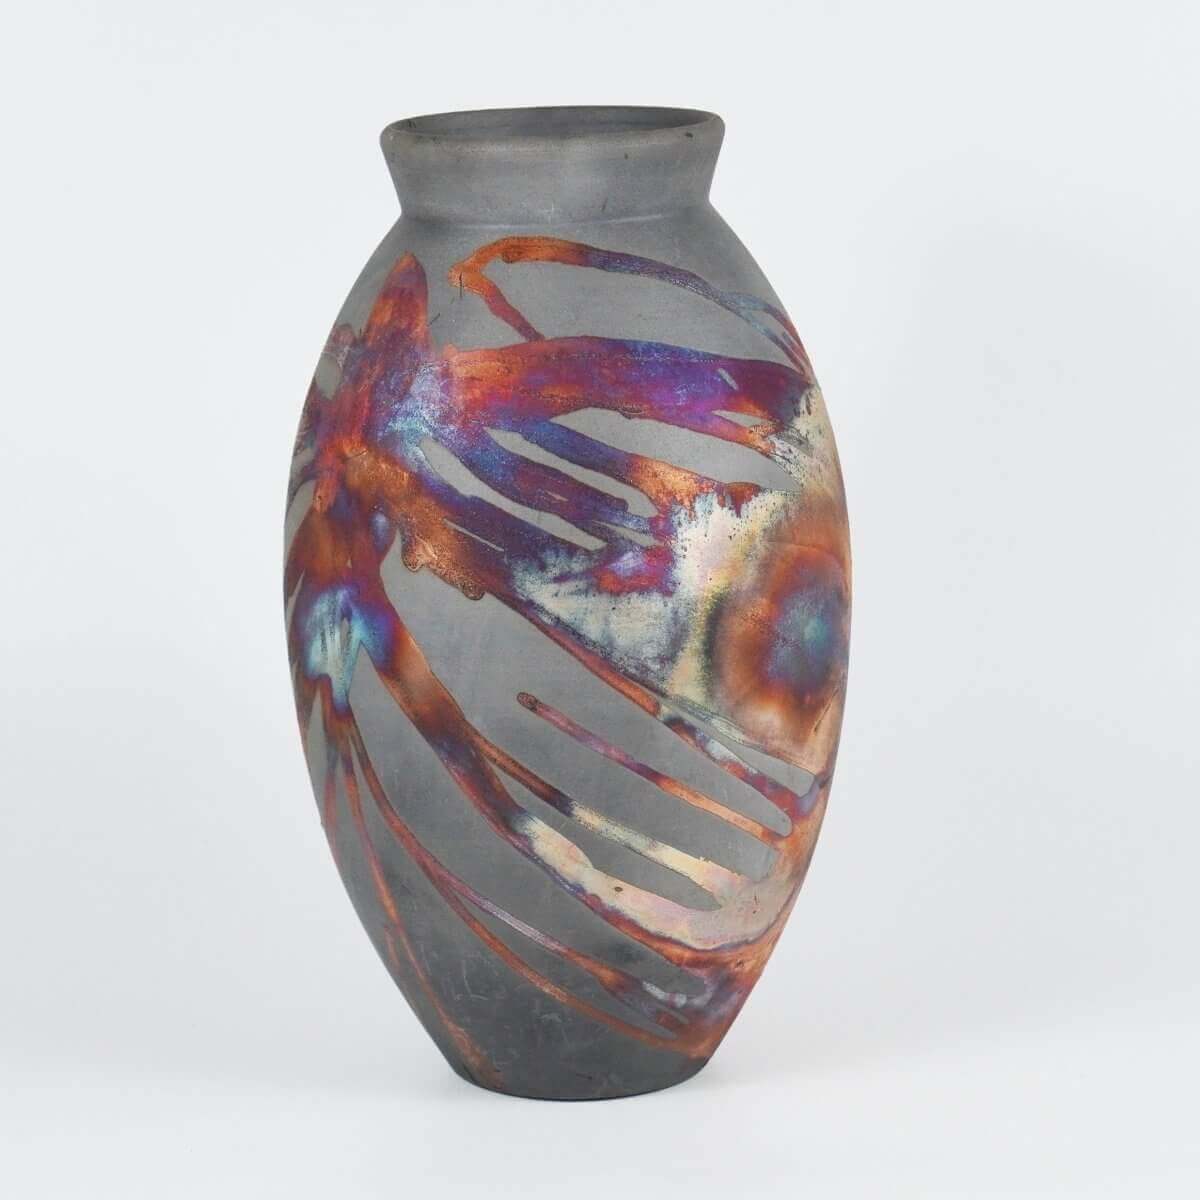 RAAQUU Large Oval Ceramic Vase Carbon Copper S/N0000735 13.5" Raku Pottery - RAAQUU